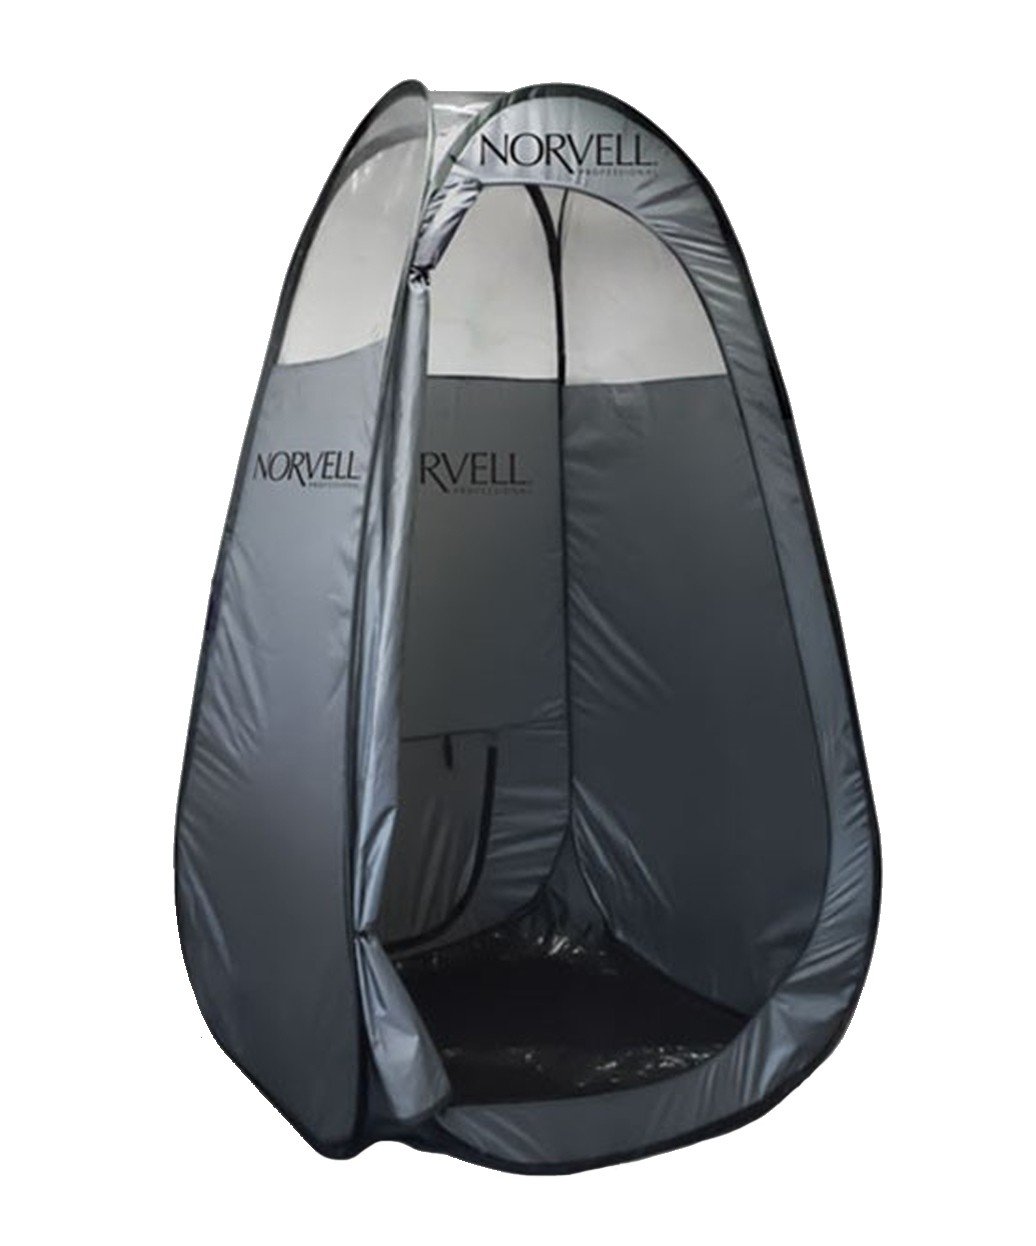 Norvell Sunless XL Pop-Up Tent & Travel Bag